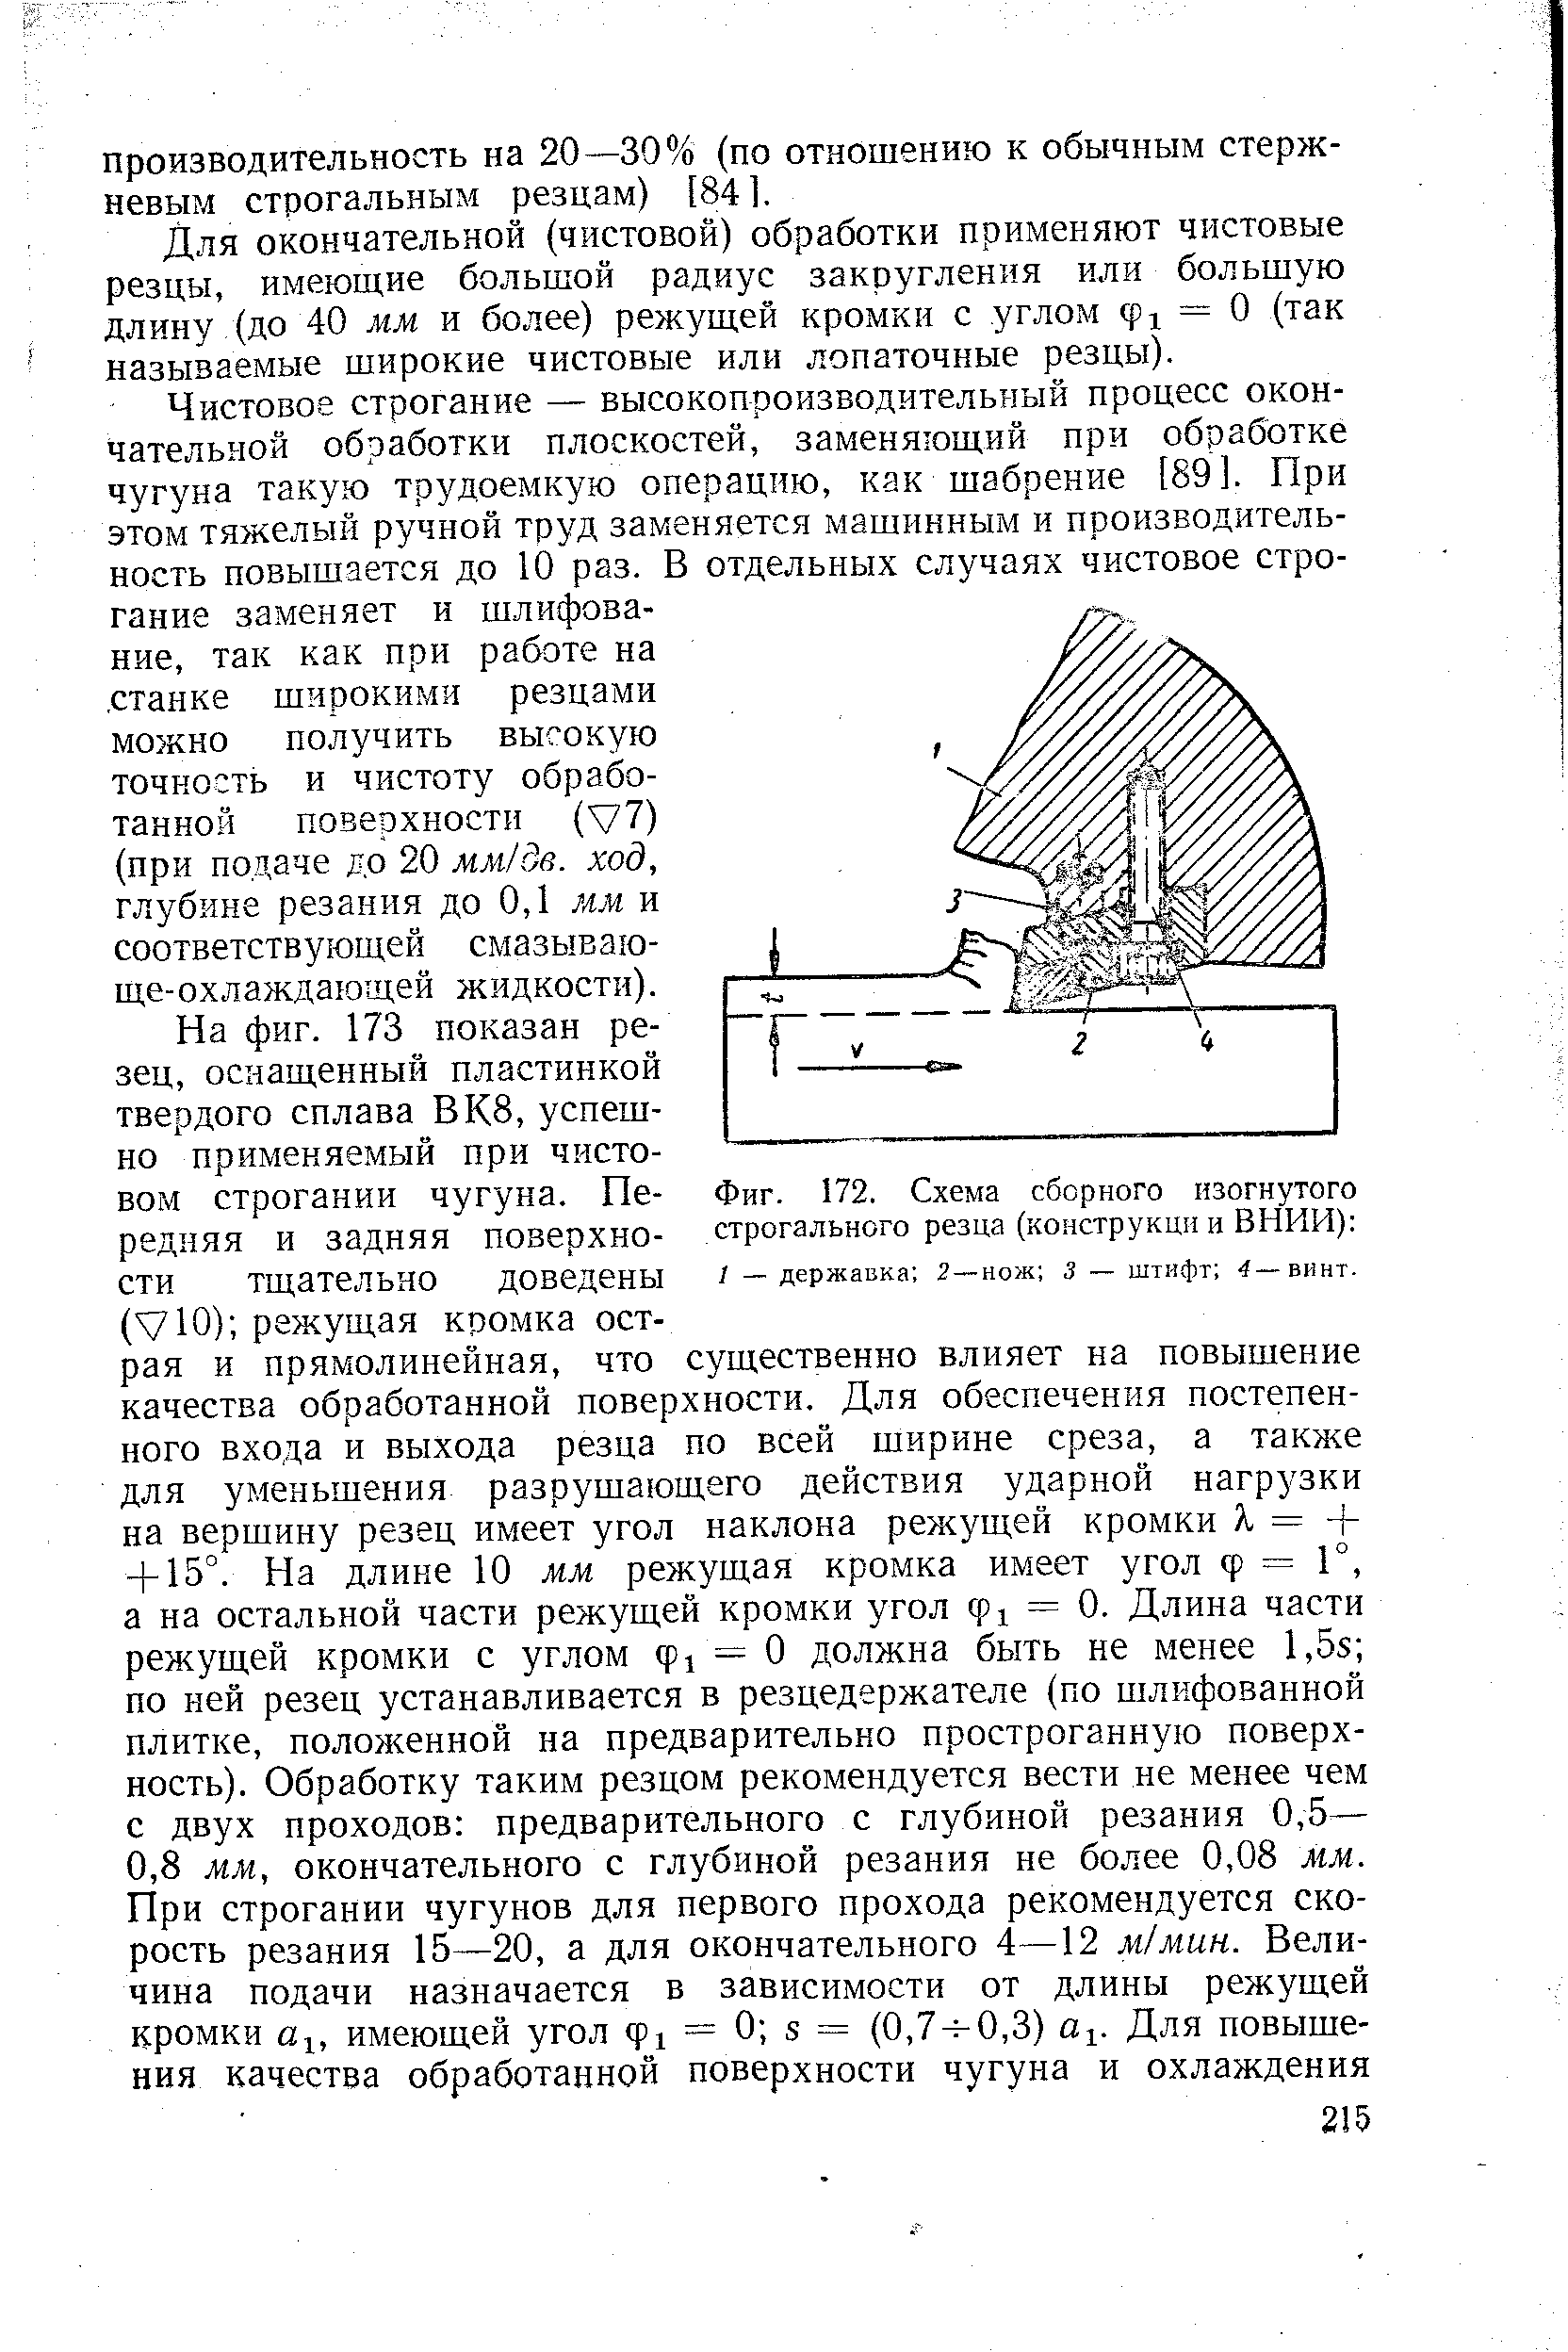 Фиг. 172. Схема сборного изогнутого строгального резца (конструкции ВНИИ) 
